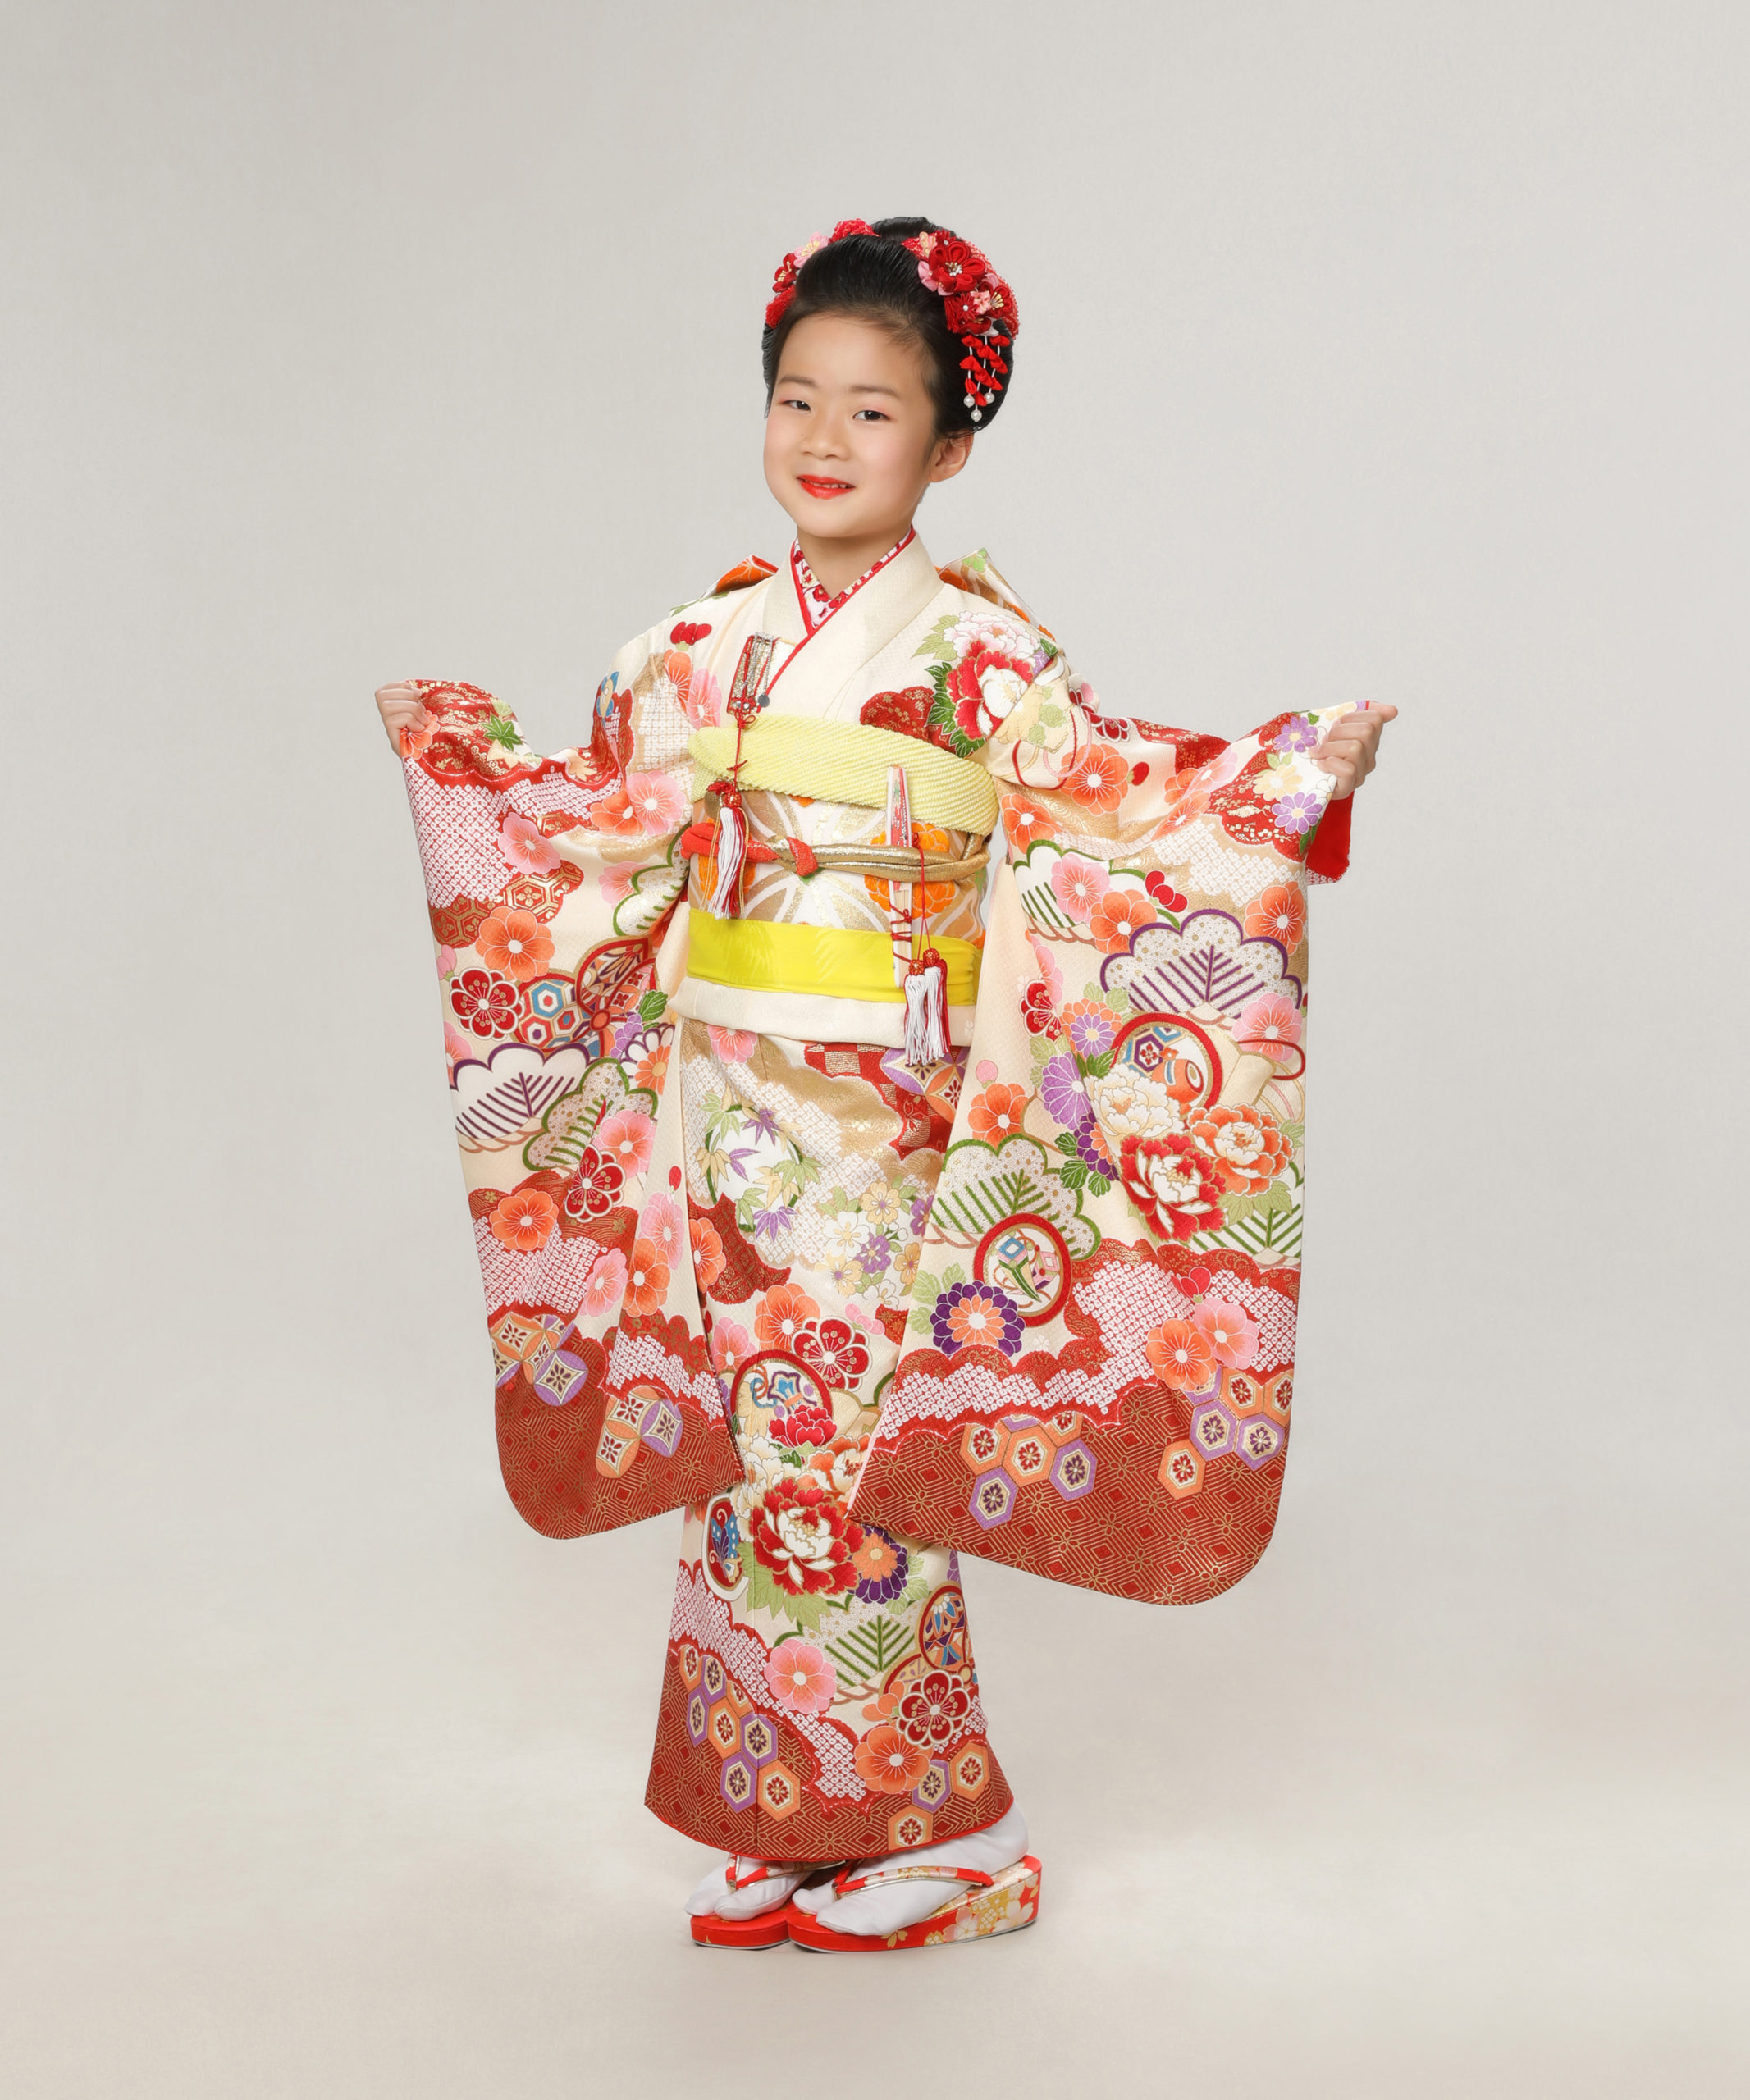 七五三記念写真撮影例(7歳女の子着物)横浜そごう写真館